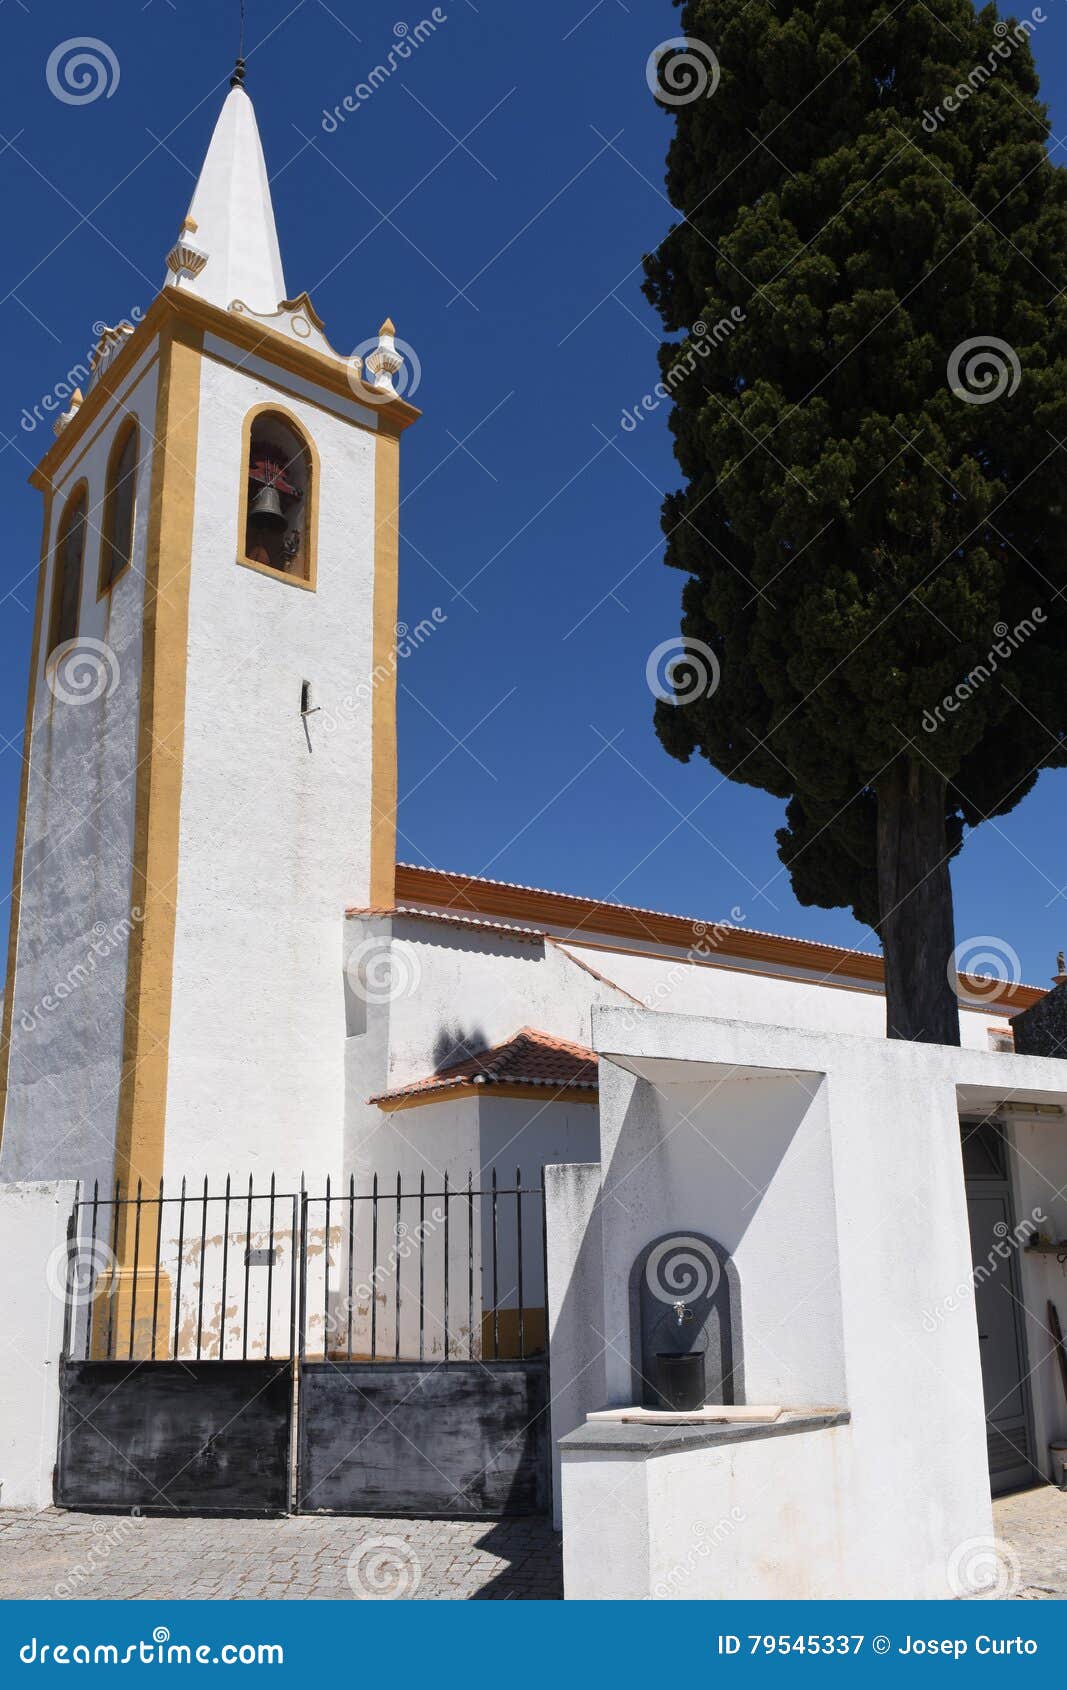 church of crato,